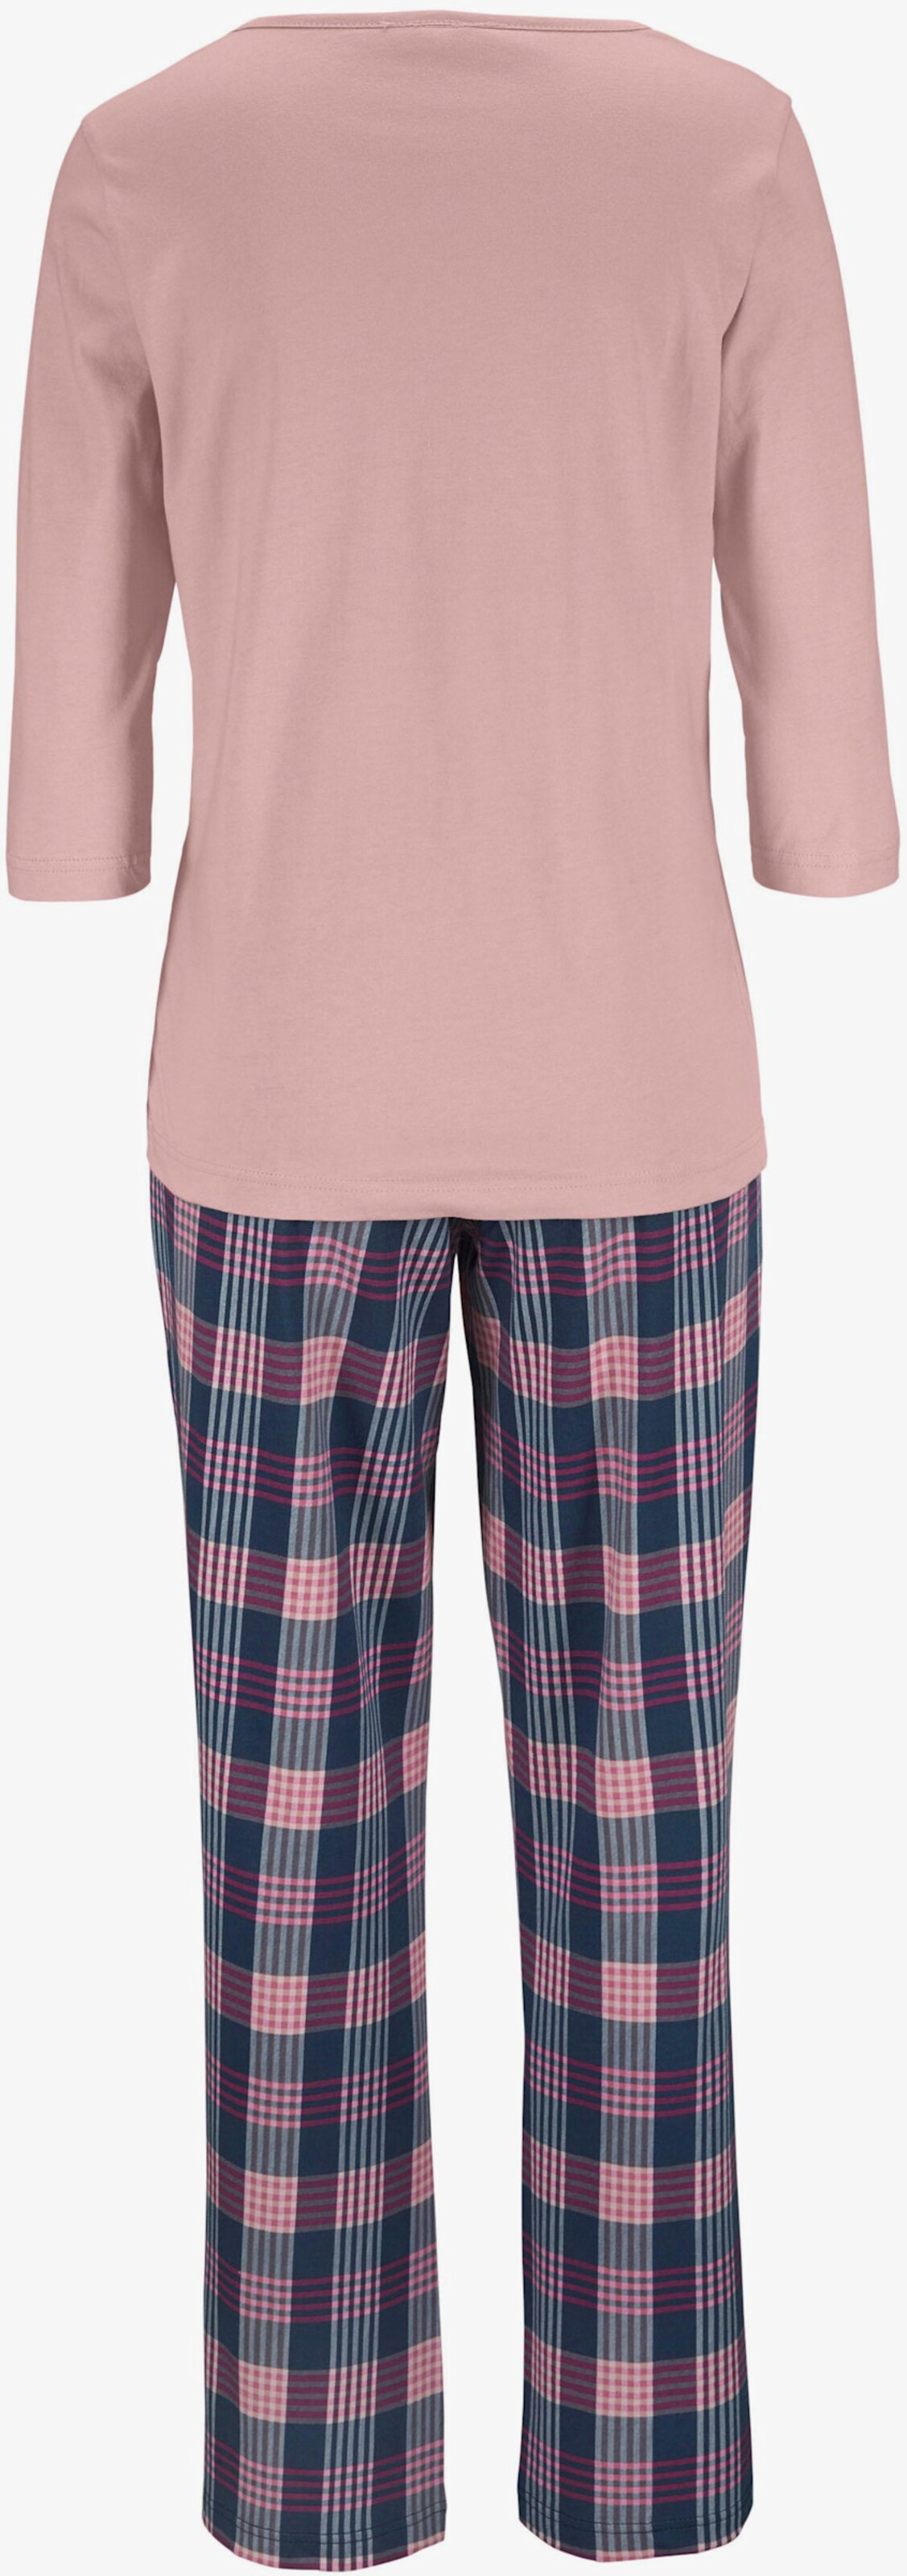 Vivance Dreams Pyjama - rose à carreaux, bordeaux à carreaux